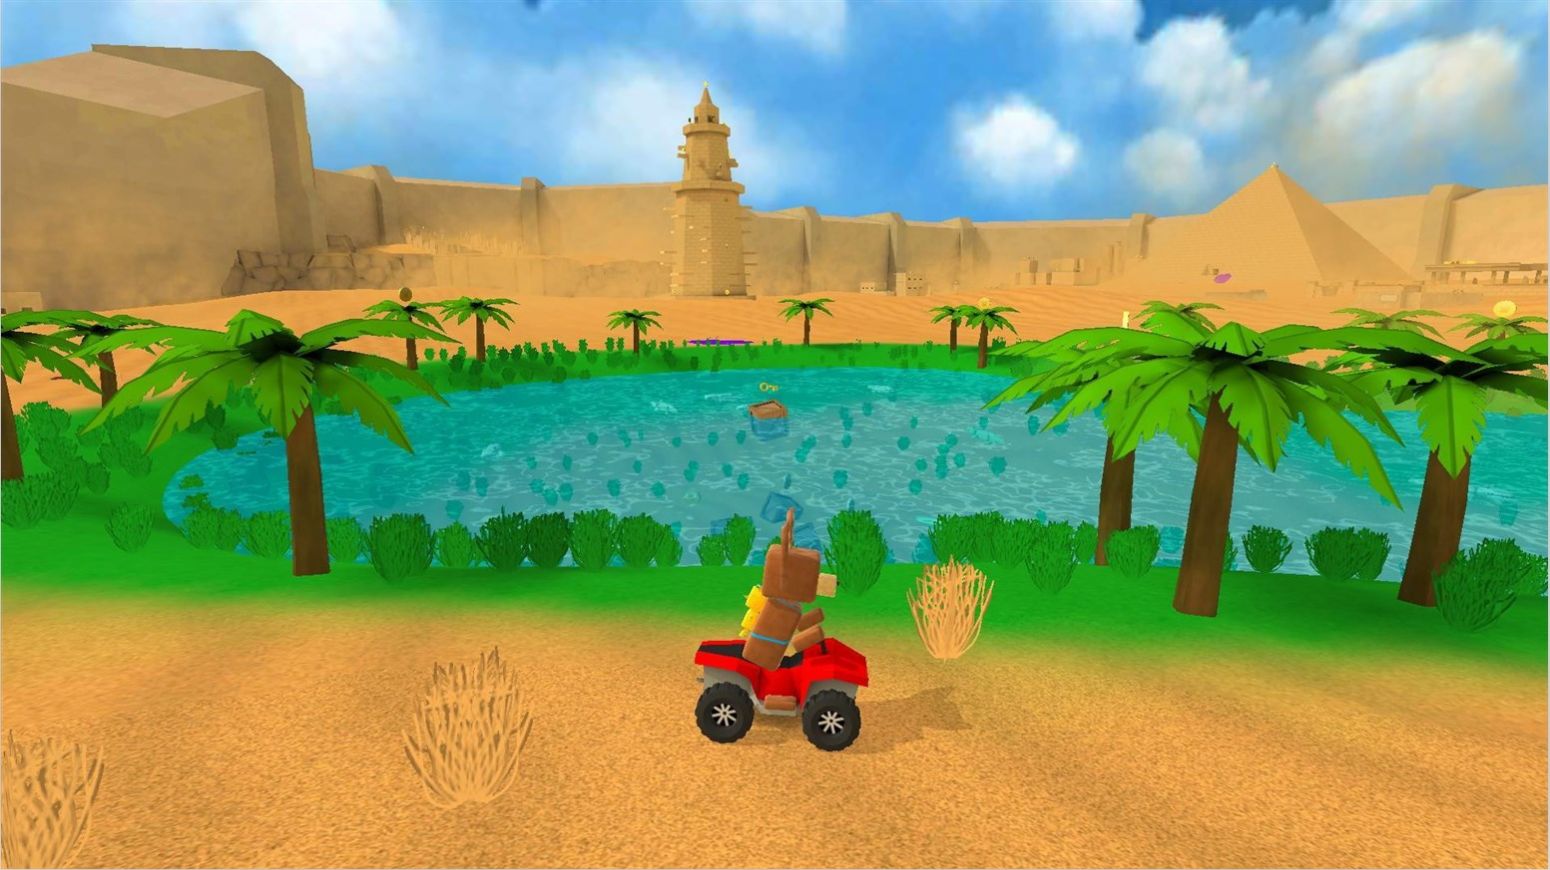 荒岛探险记游戏下载,荒岛探险记游戏安卓版 v306.1.0.3018